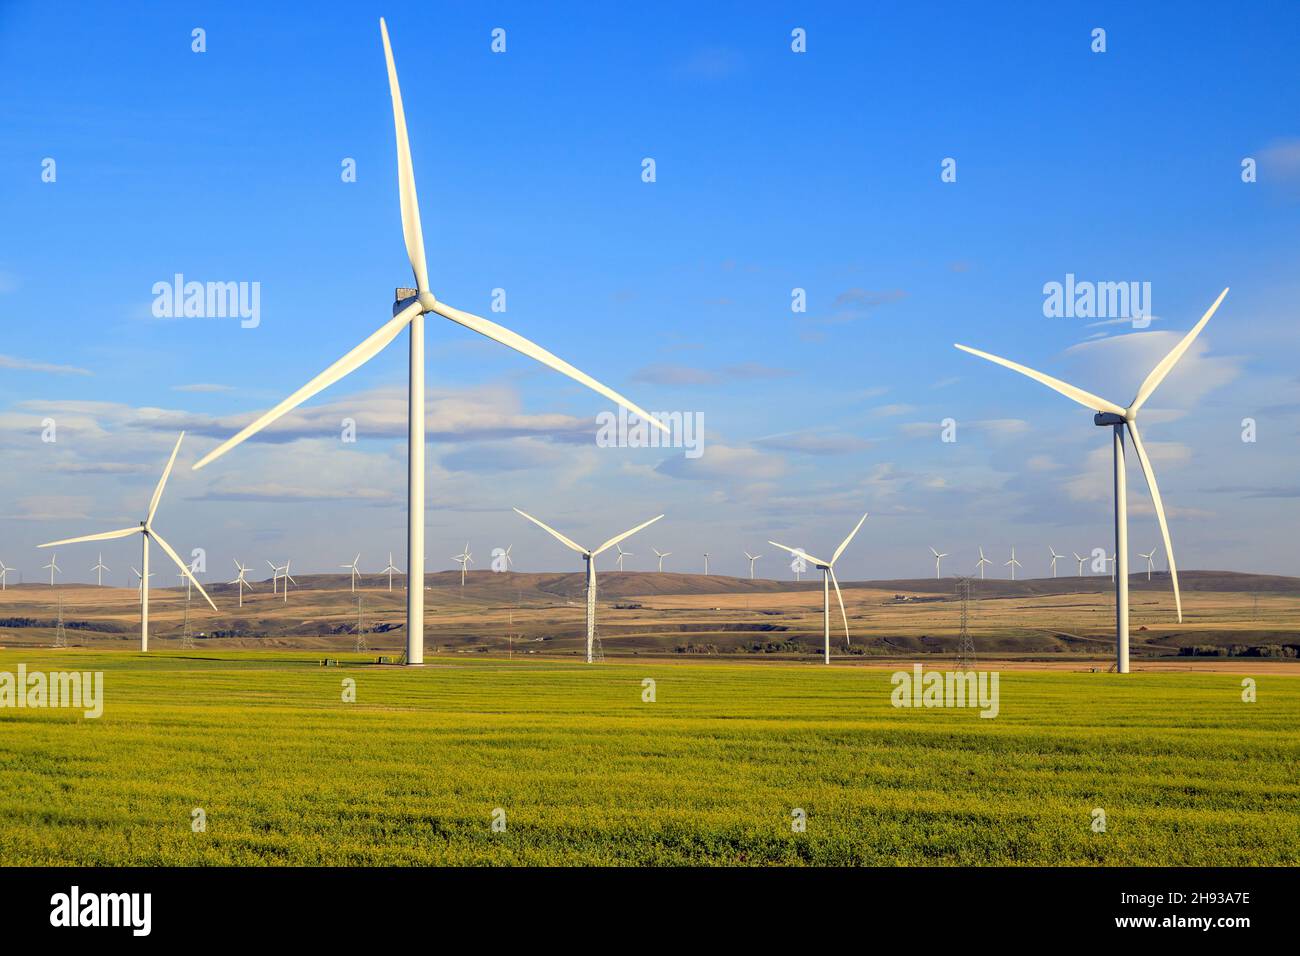 Windenergie oder Windenergie ist die Nutzung von Windenergieanlagen zur Stromerzeugung. Windenergie ist eine beliebte, nachhaltige, erneuerbare Energiequelle. Stockfoto